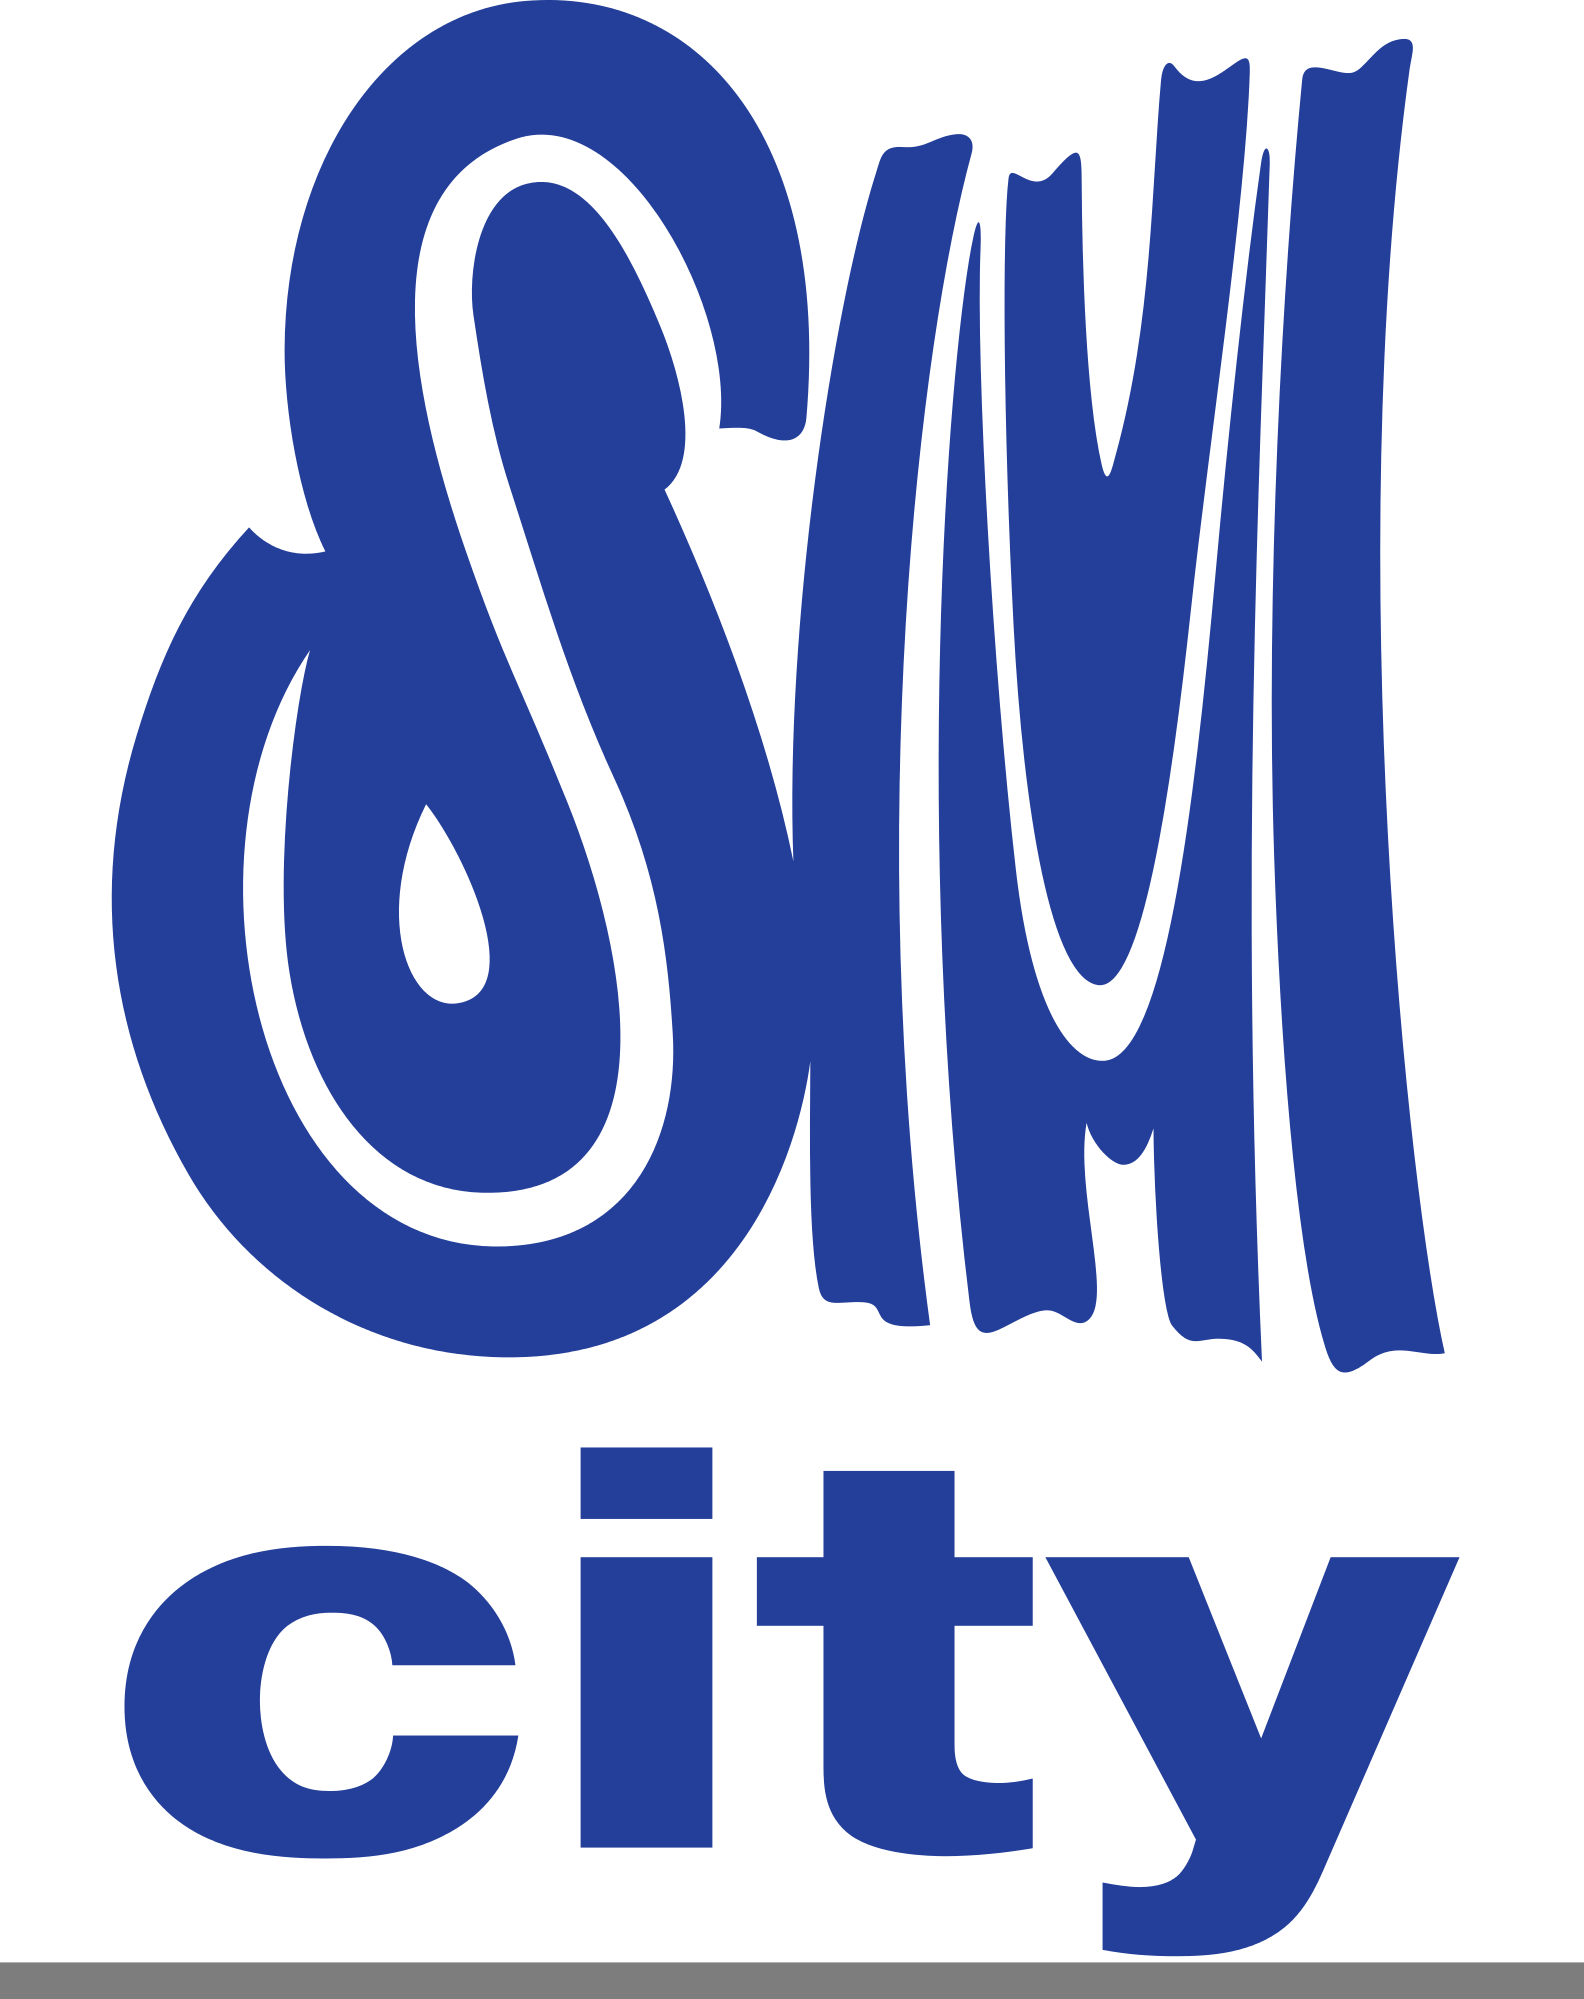 SM Logo - SM City | Logopedia | FANDOM powered by Wikia